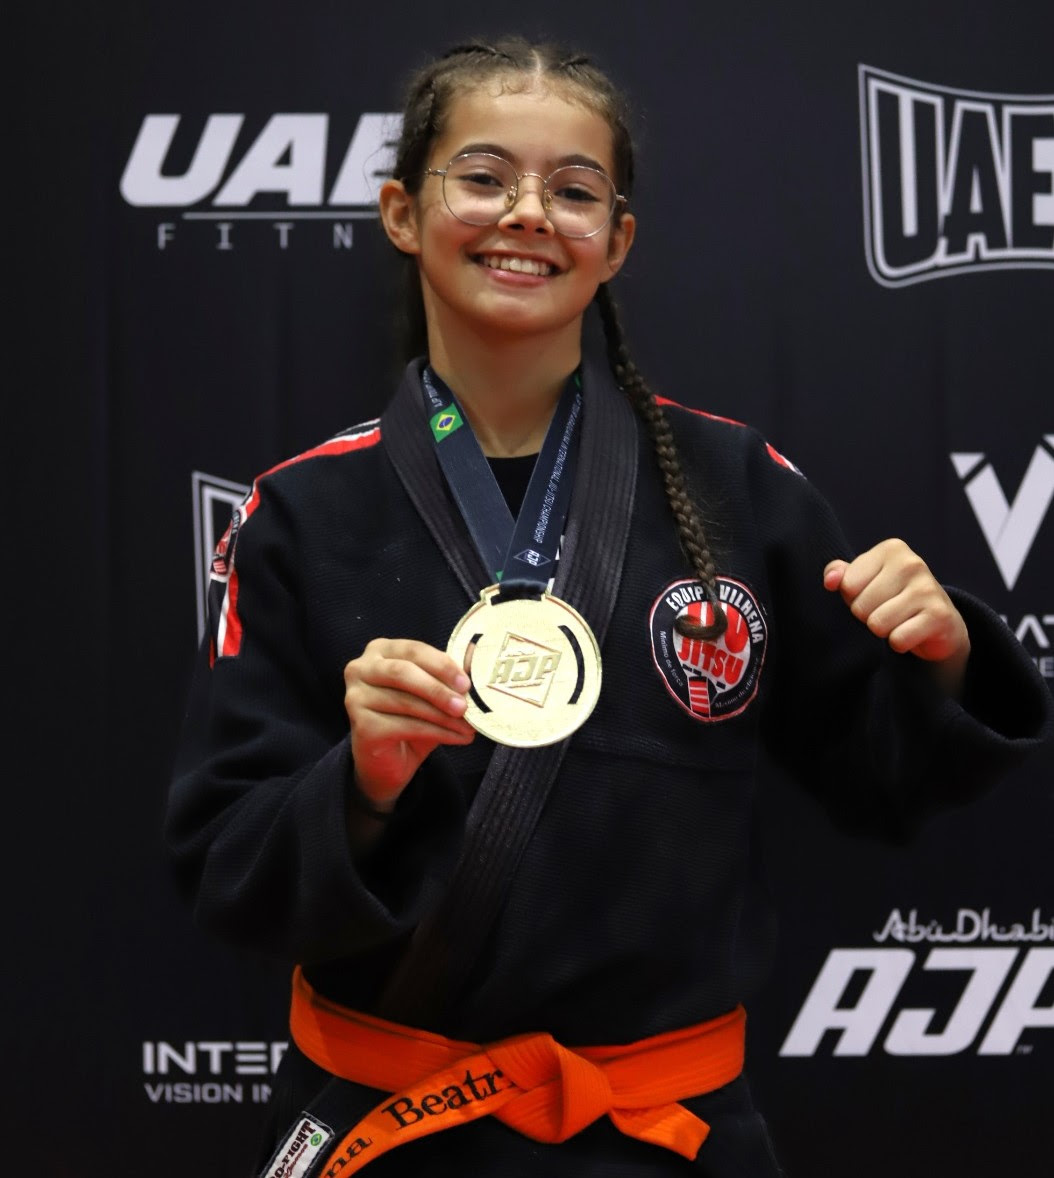 “Eu treino todos os dias e conquistar mais uma medalha, é mostrar para mim mesma, que todos os esforços valem a pena”, disse a atleta Ana Beatriz Amorim, de 13 anos.